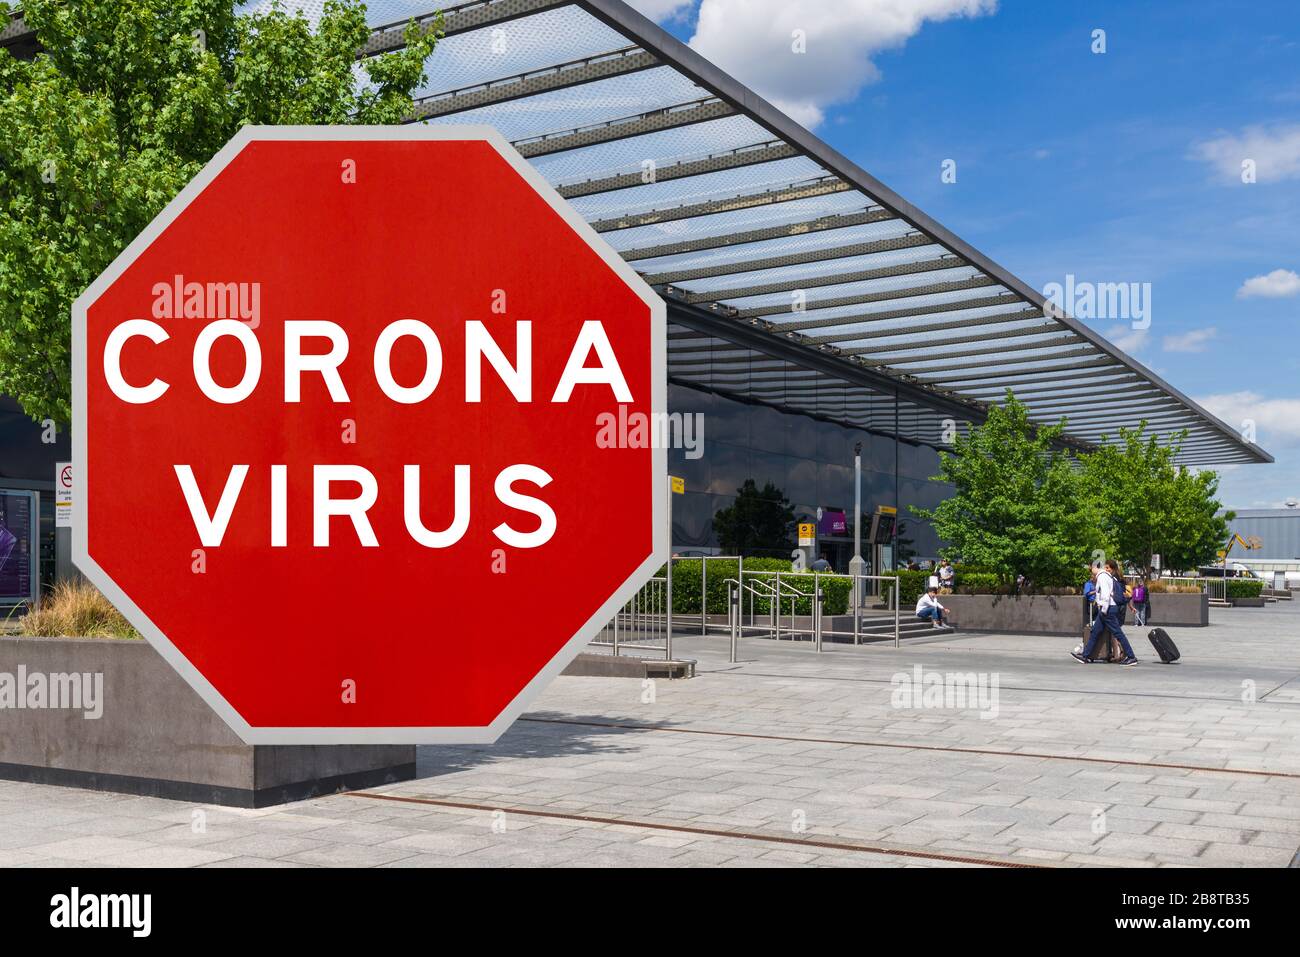 Konzeptbild mit großem roten Coronavirus Warnschild vor dem Heathrow Terminal, Konzept für Reisebeschränkungen Stockfoto